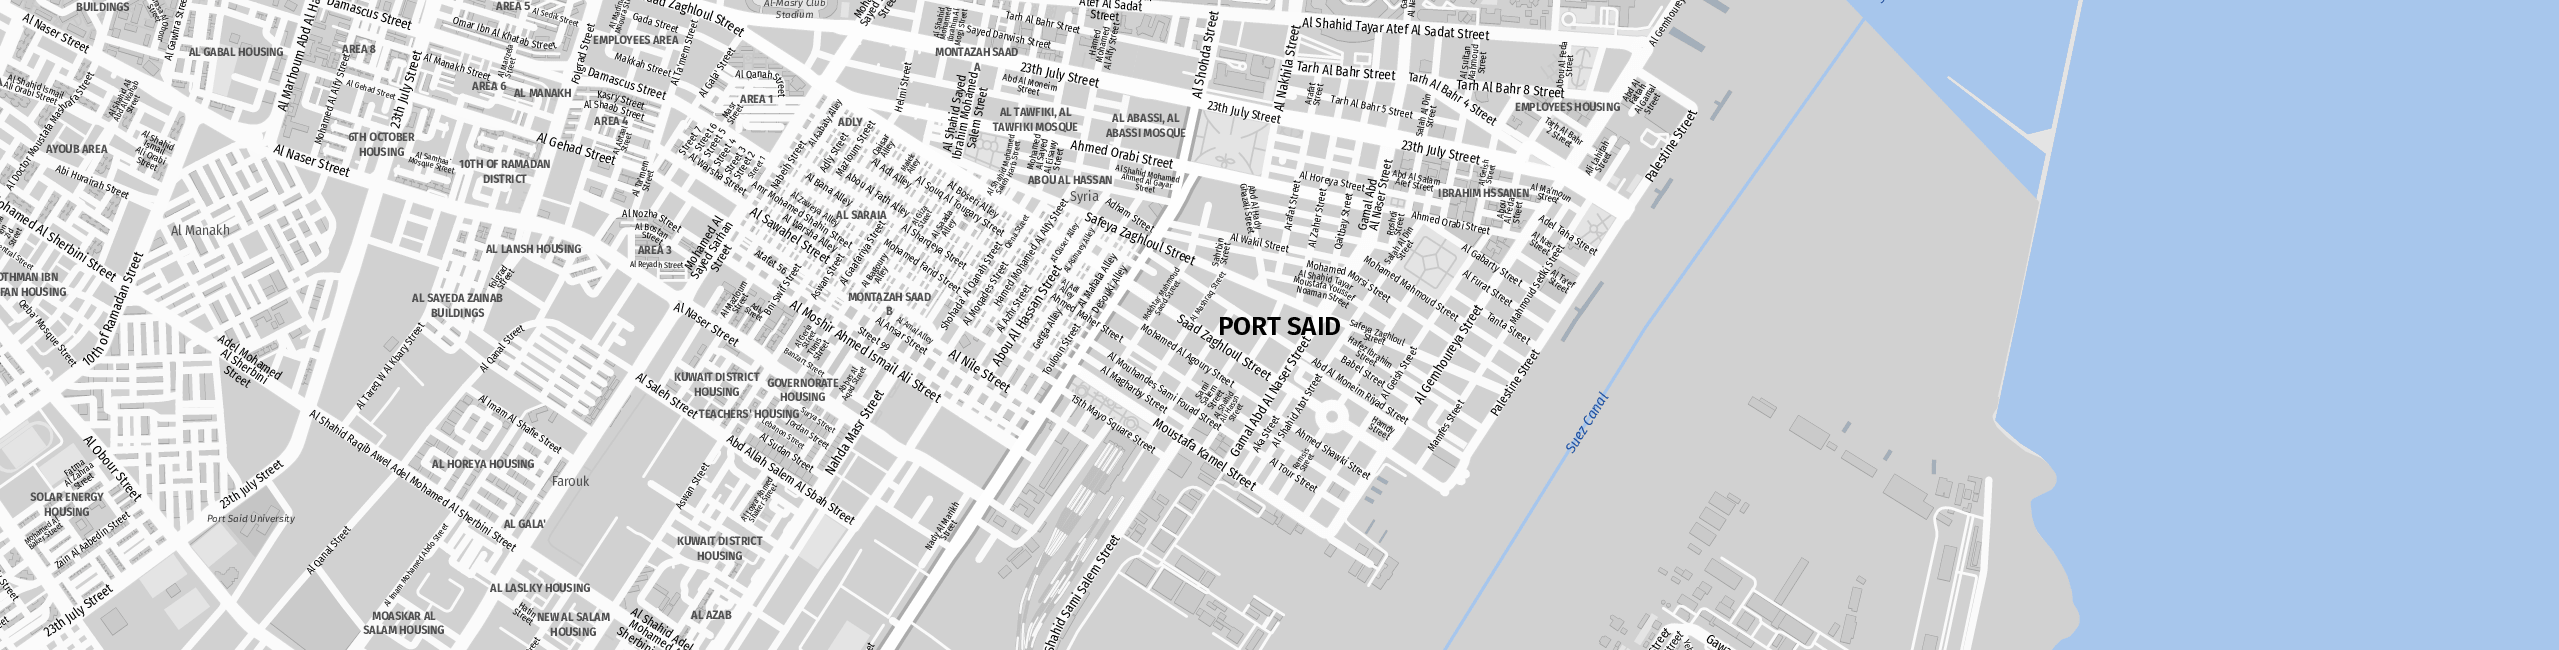 Stadtplan Port Said zum Downloaden.